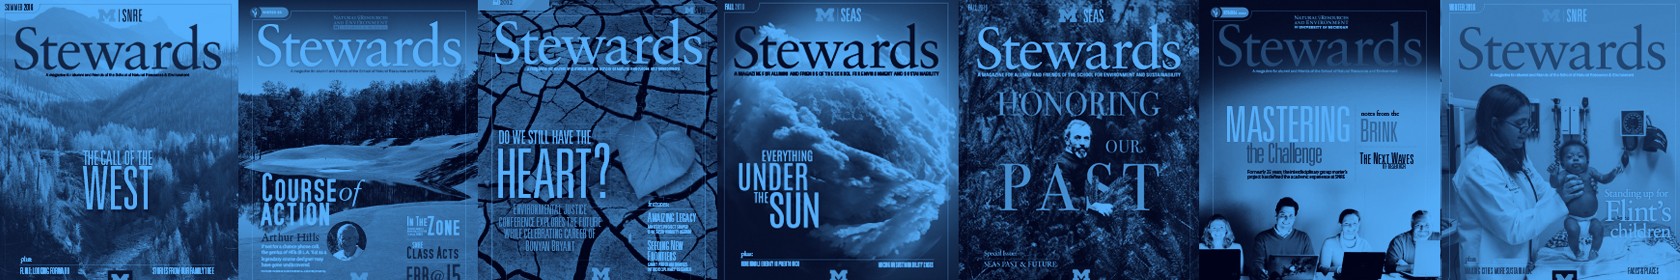 Stewards Magazine